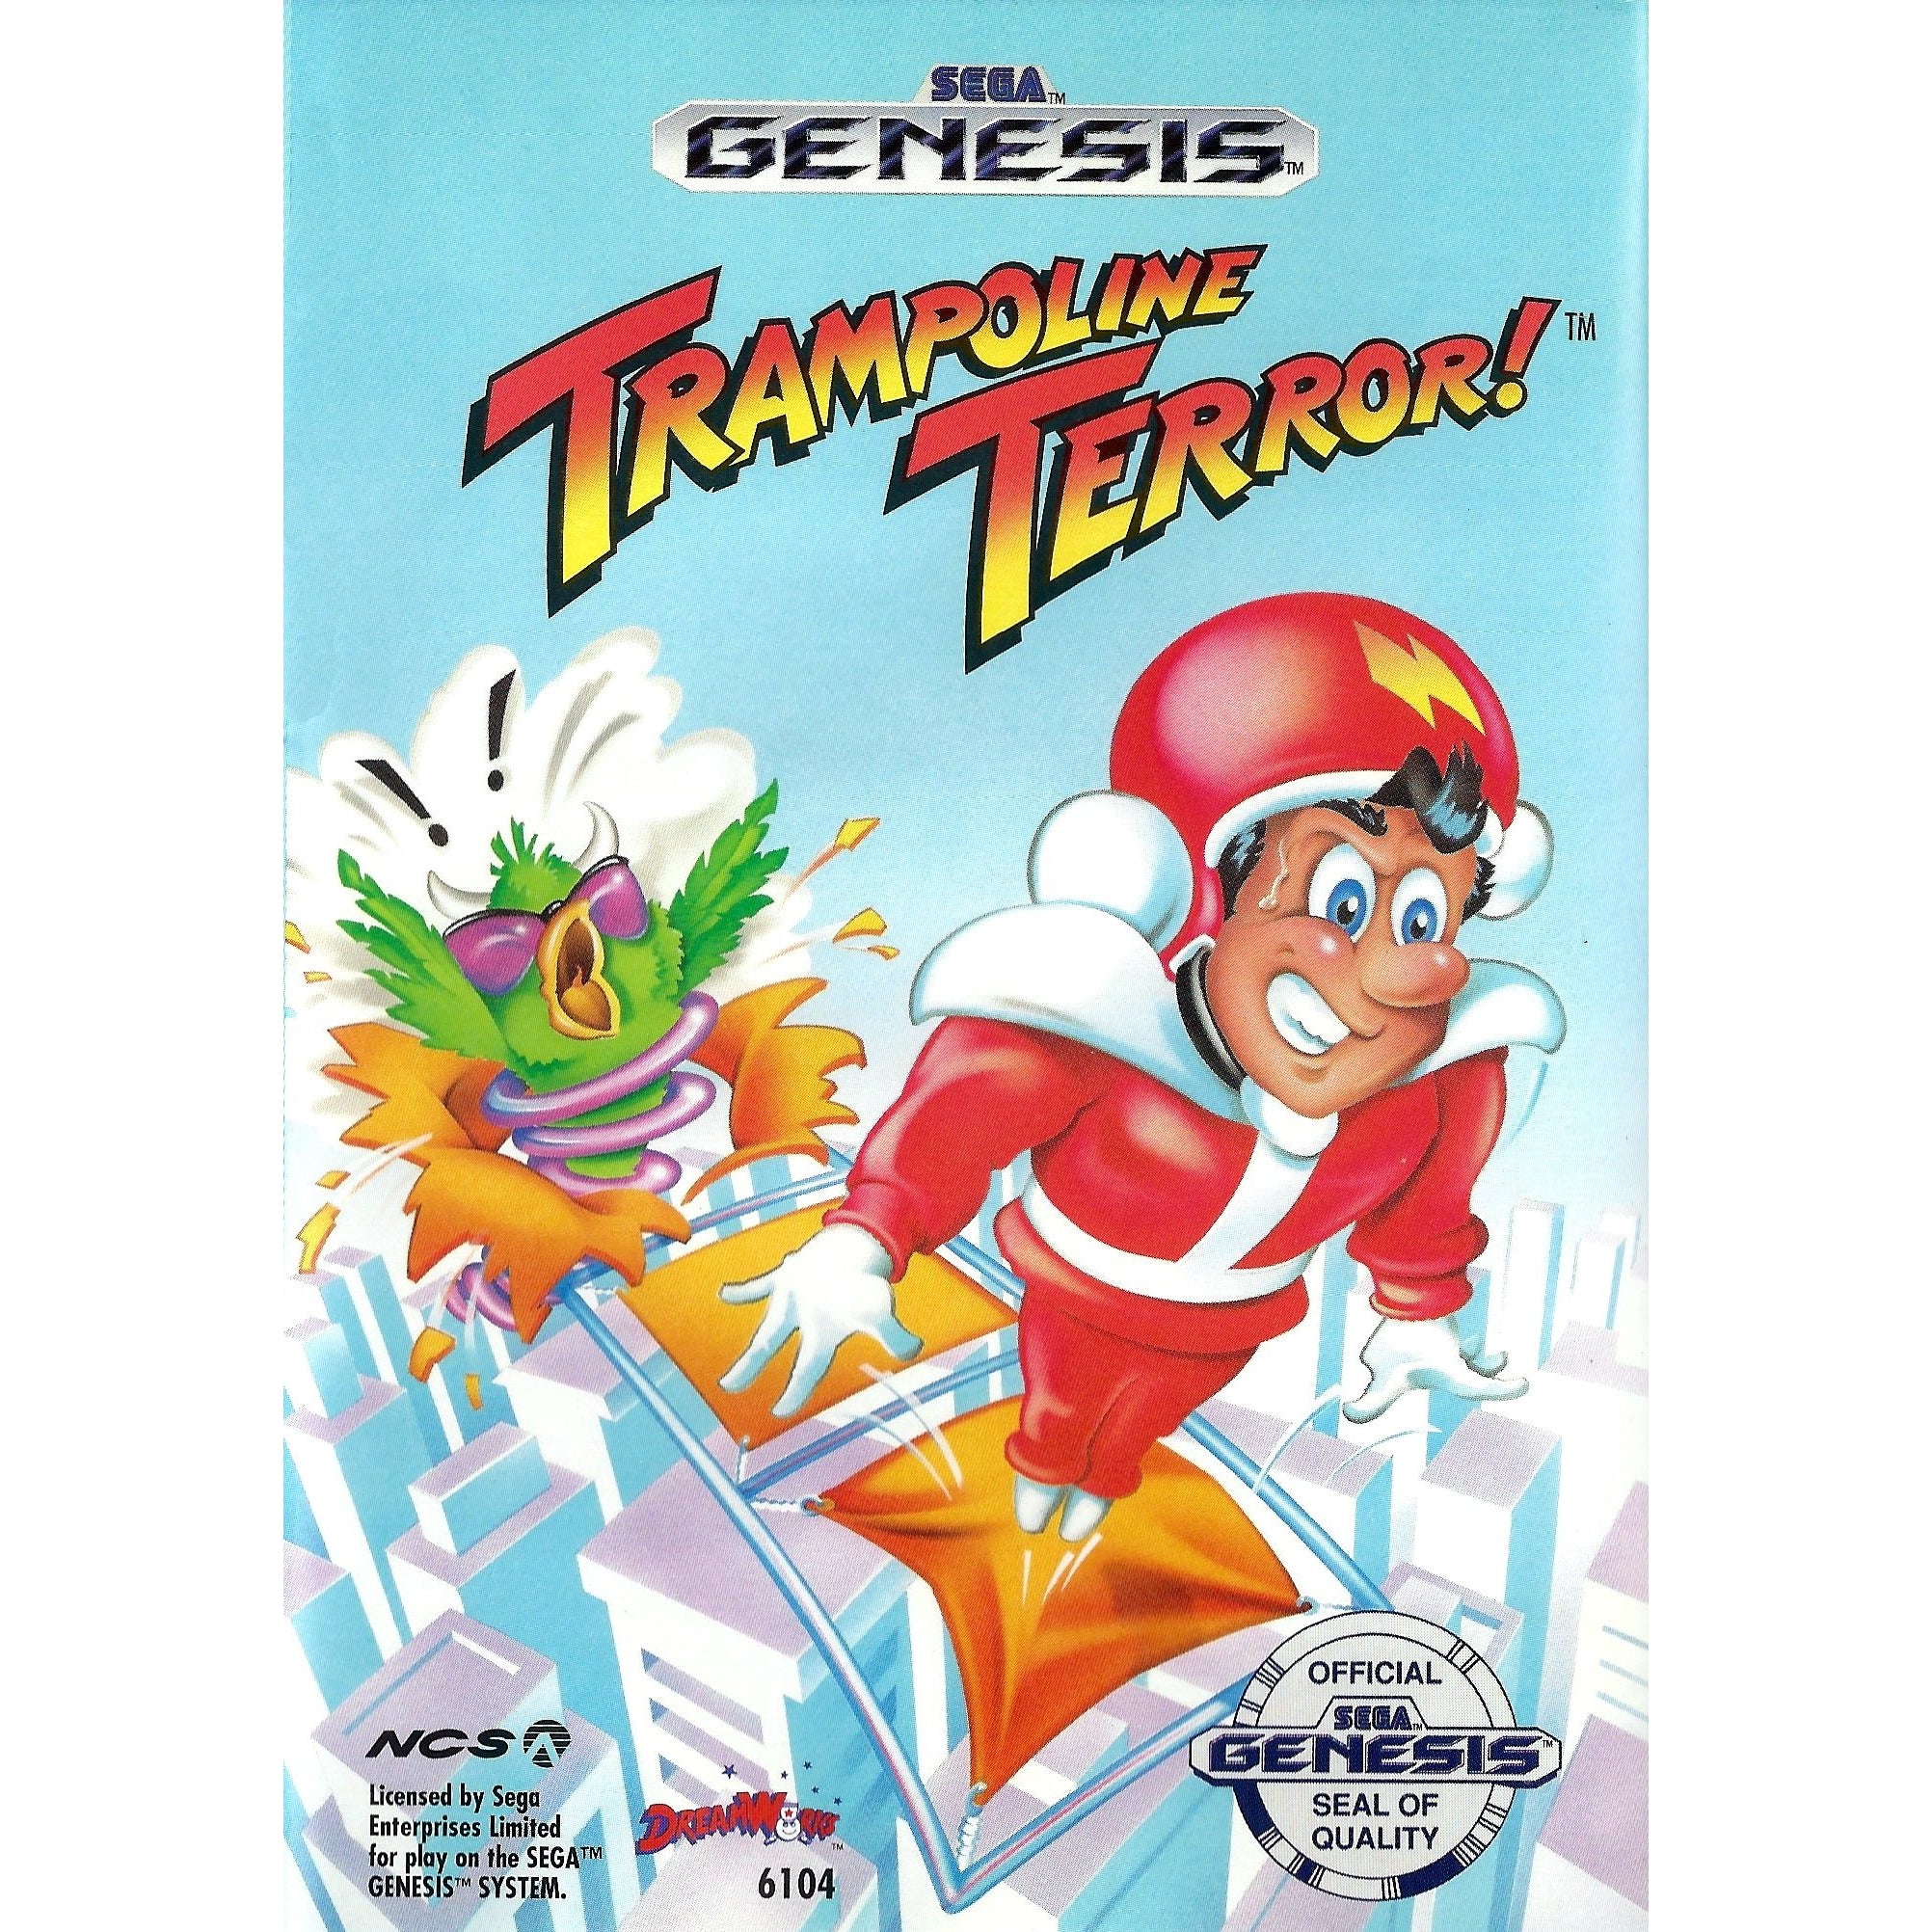 Trampoline Terror! - Sega Genesis Game